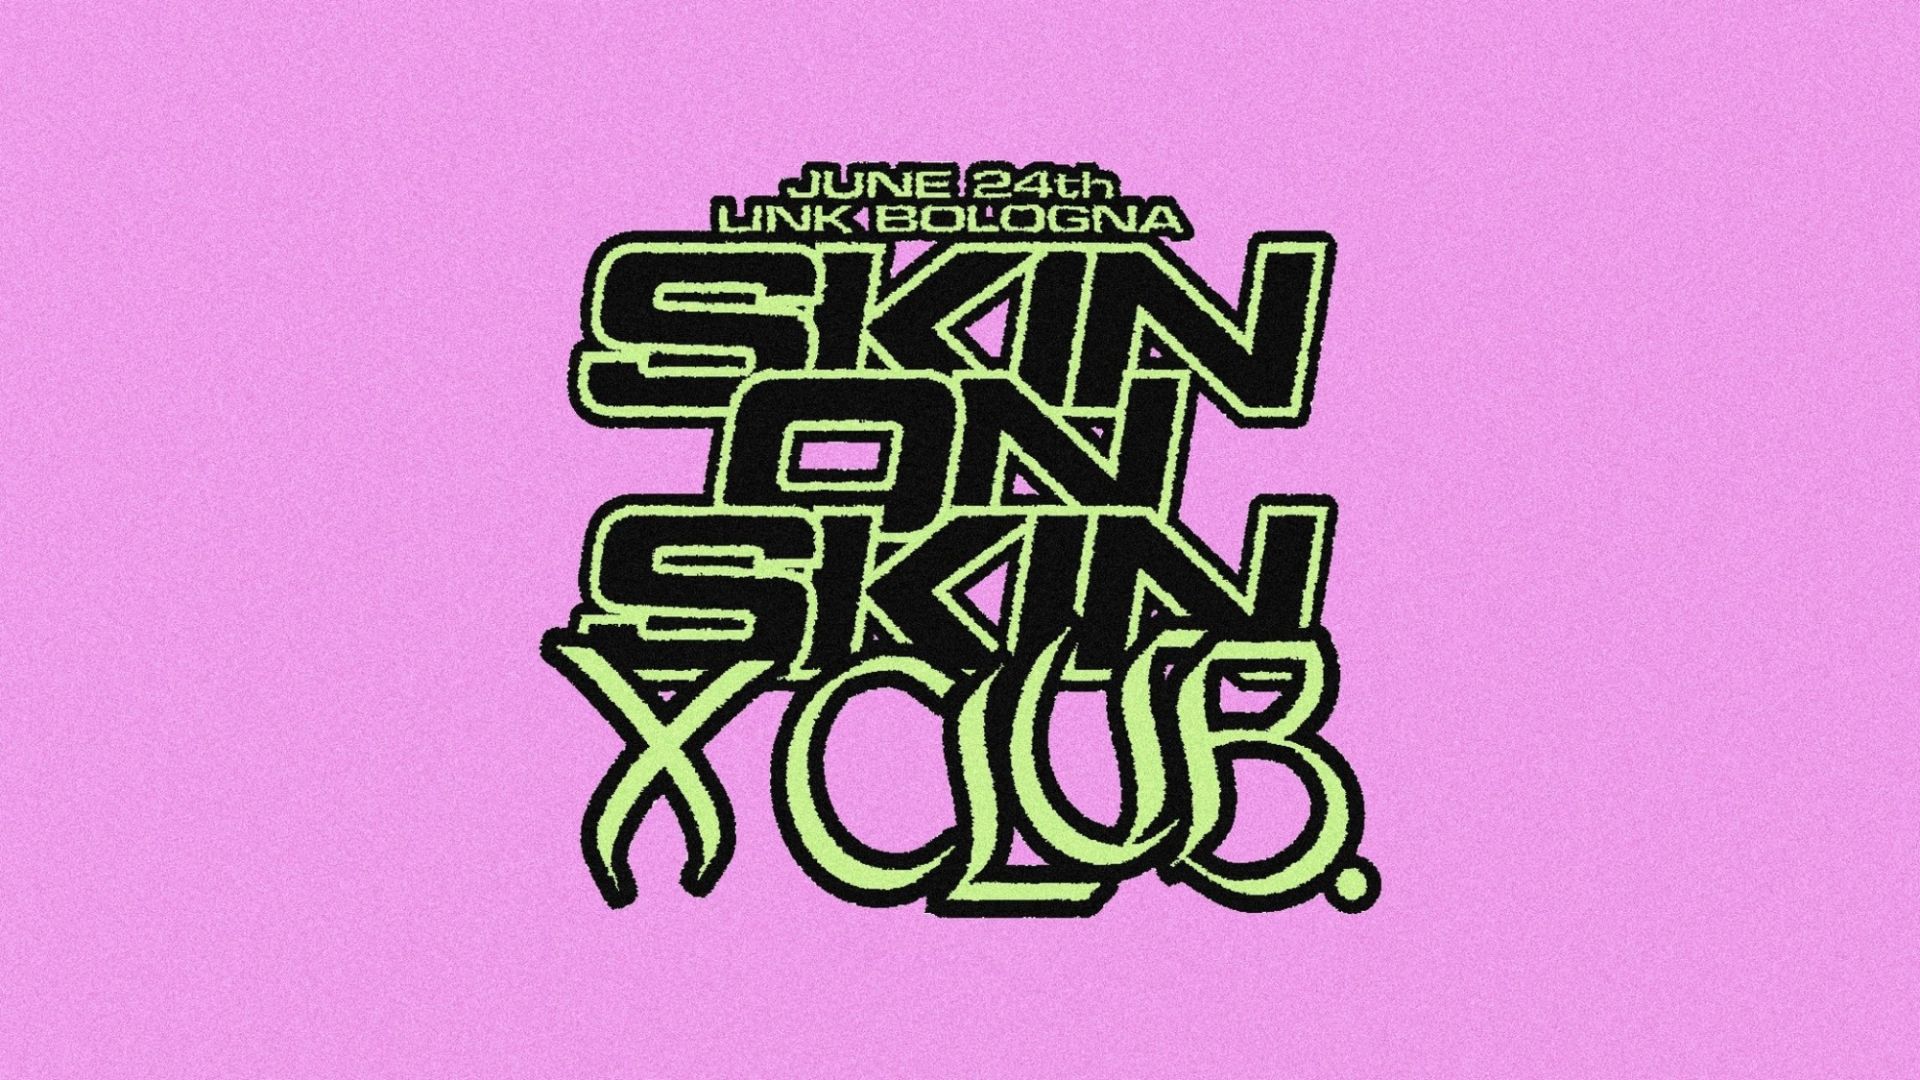 Skin On Skin - X Club.